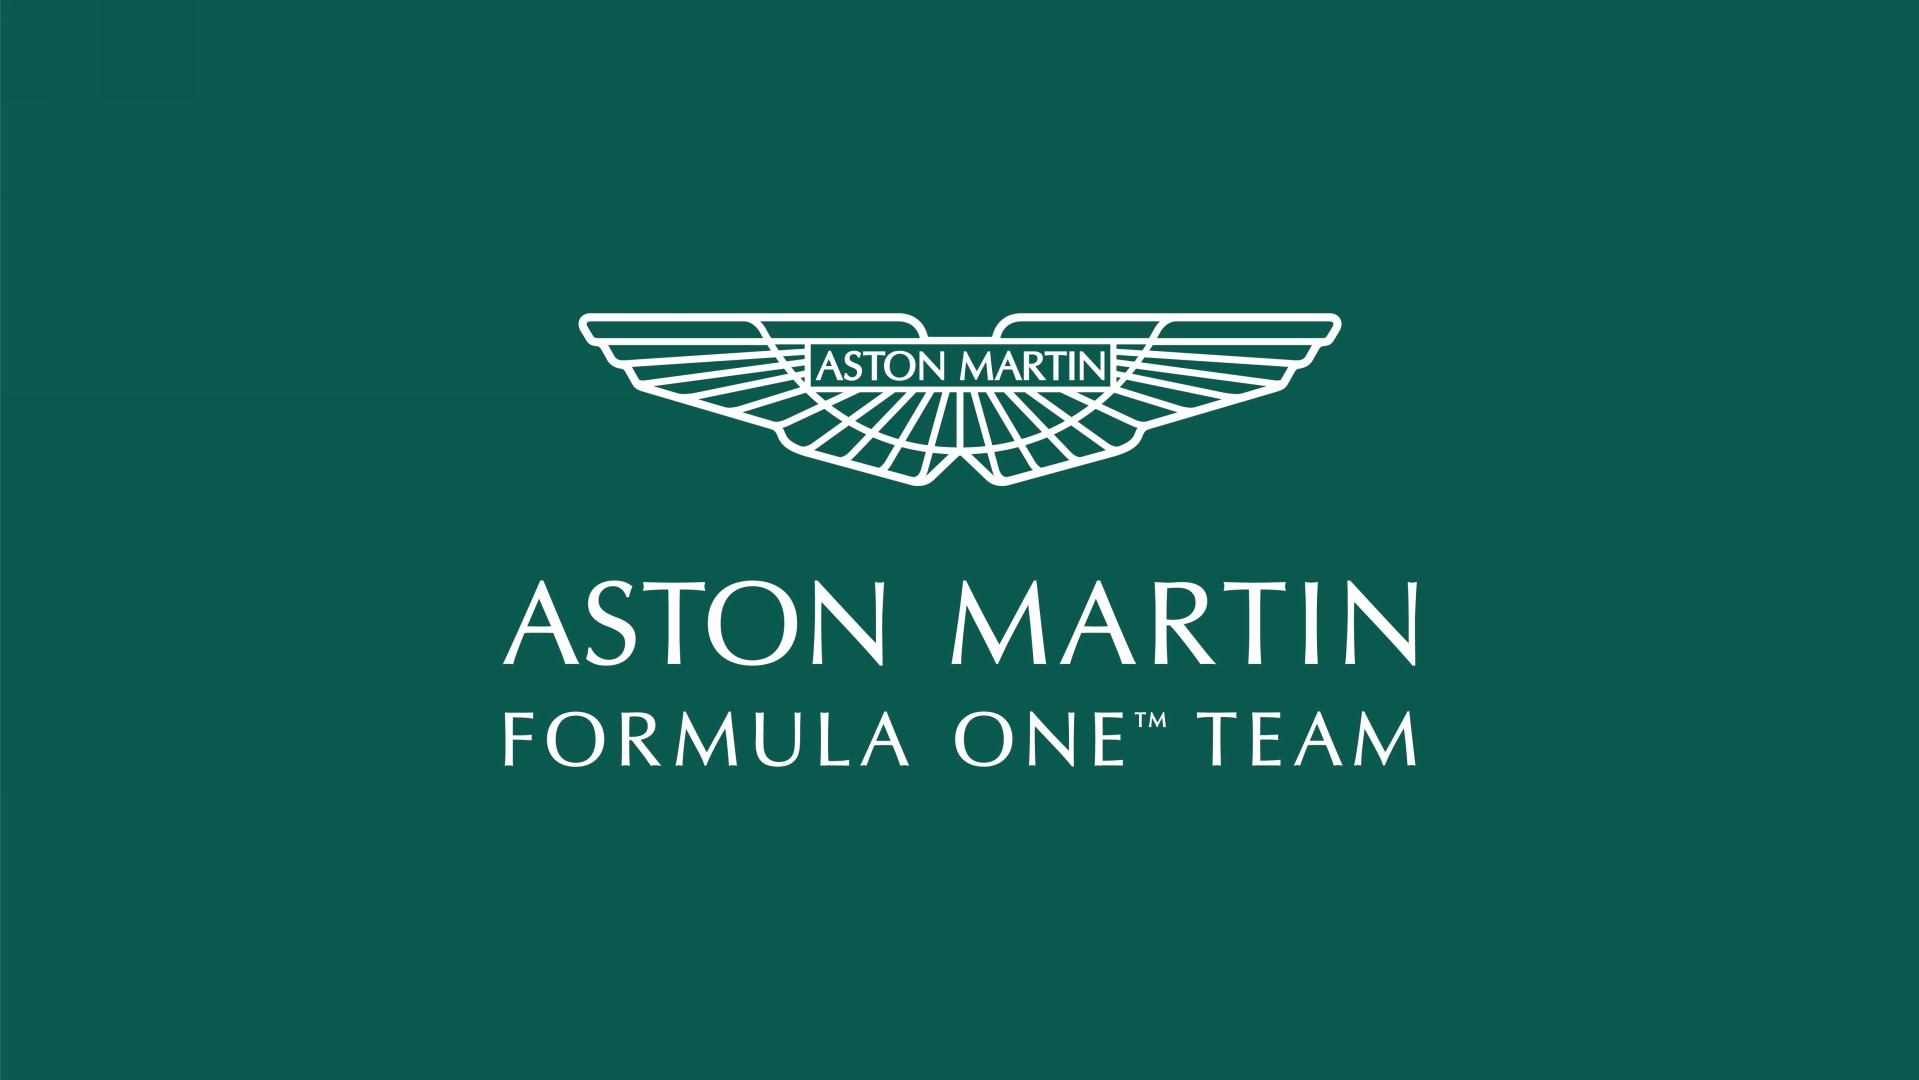 Aston Martin Formula One Team nos enseña los colores corporativos